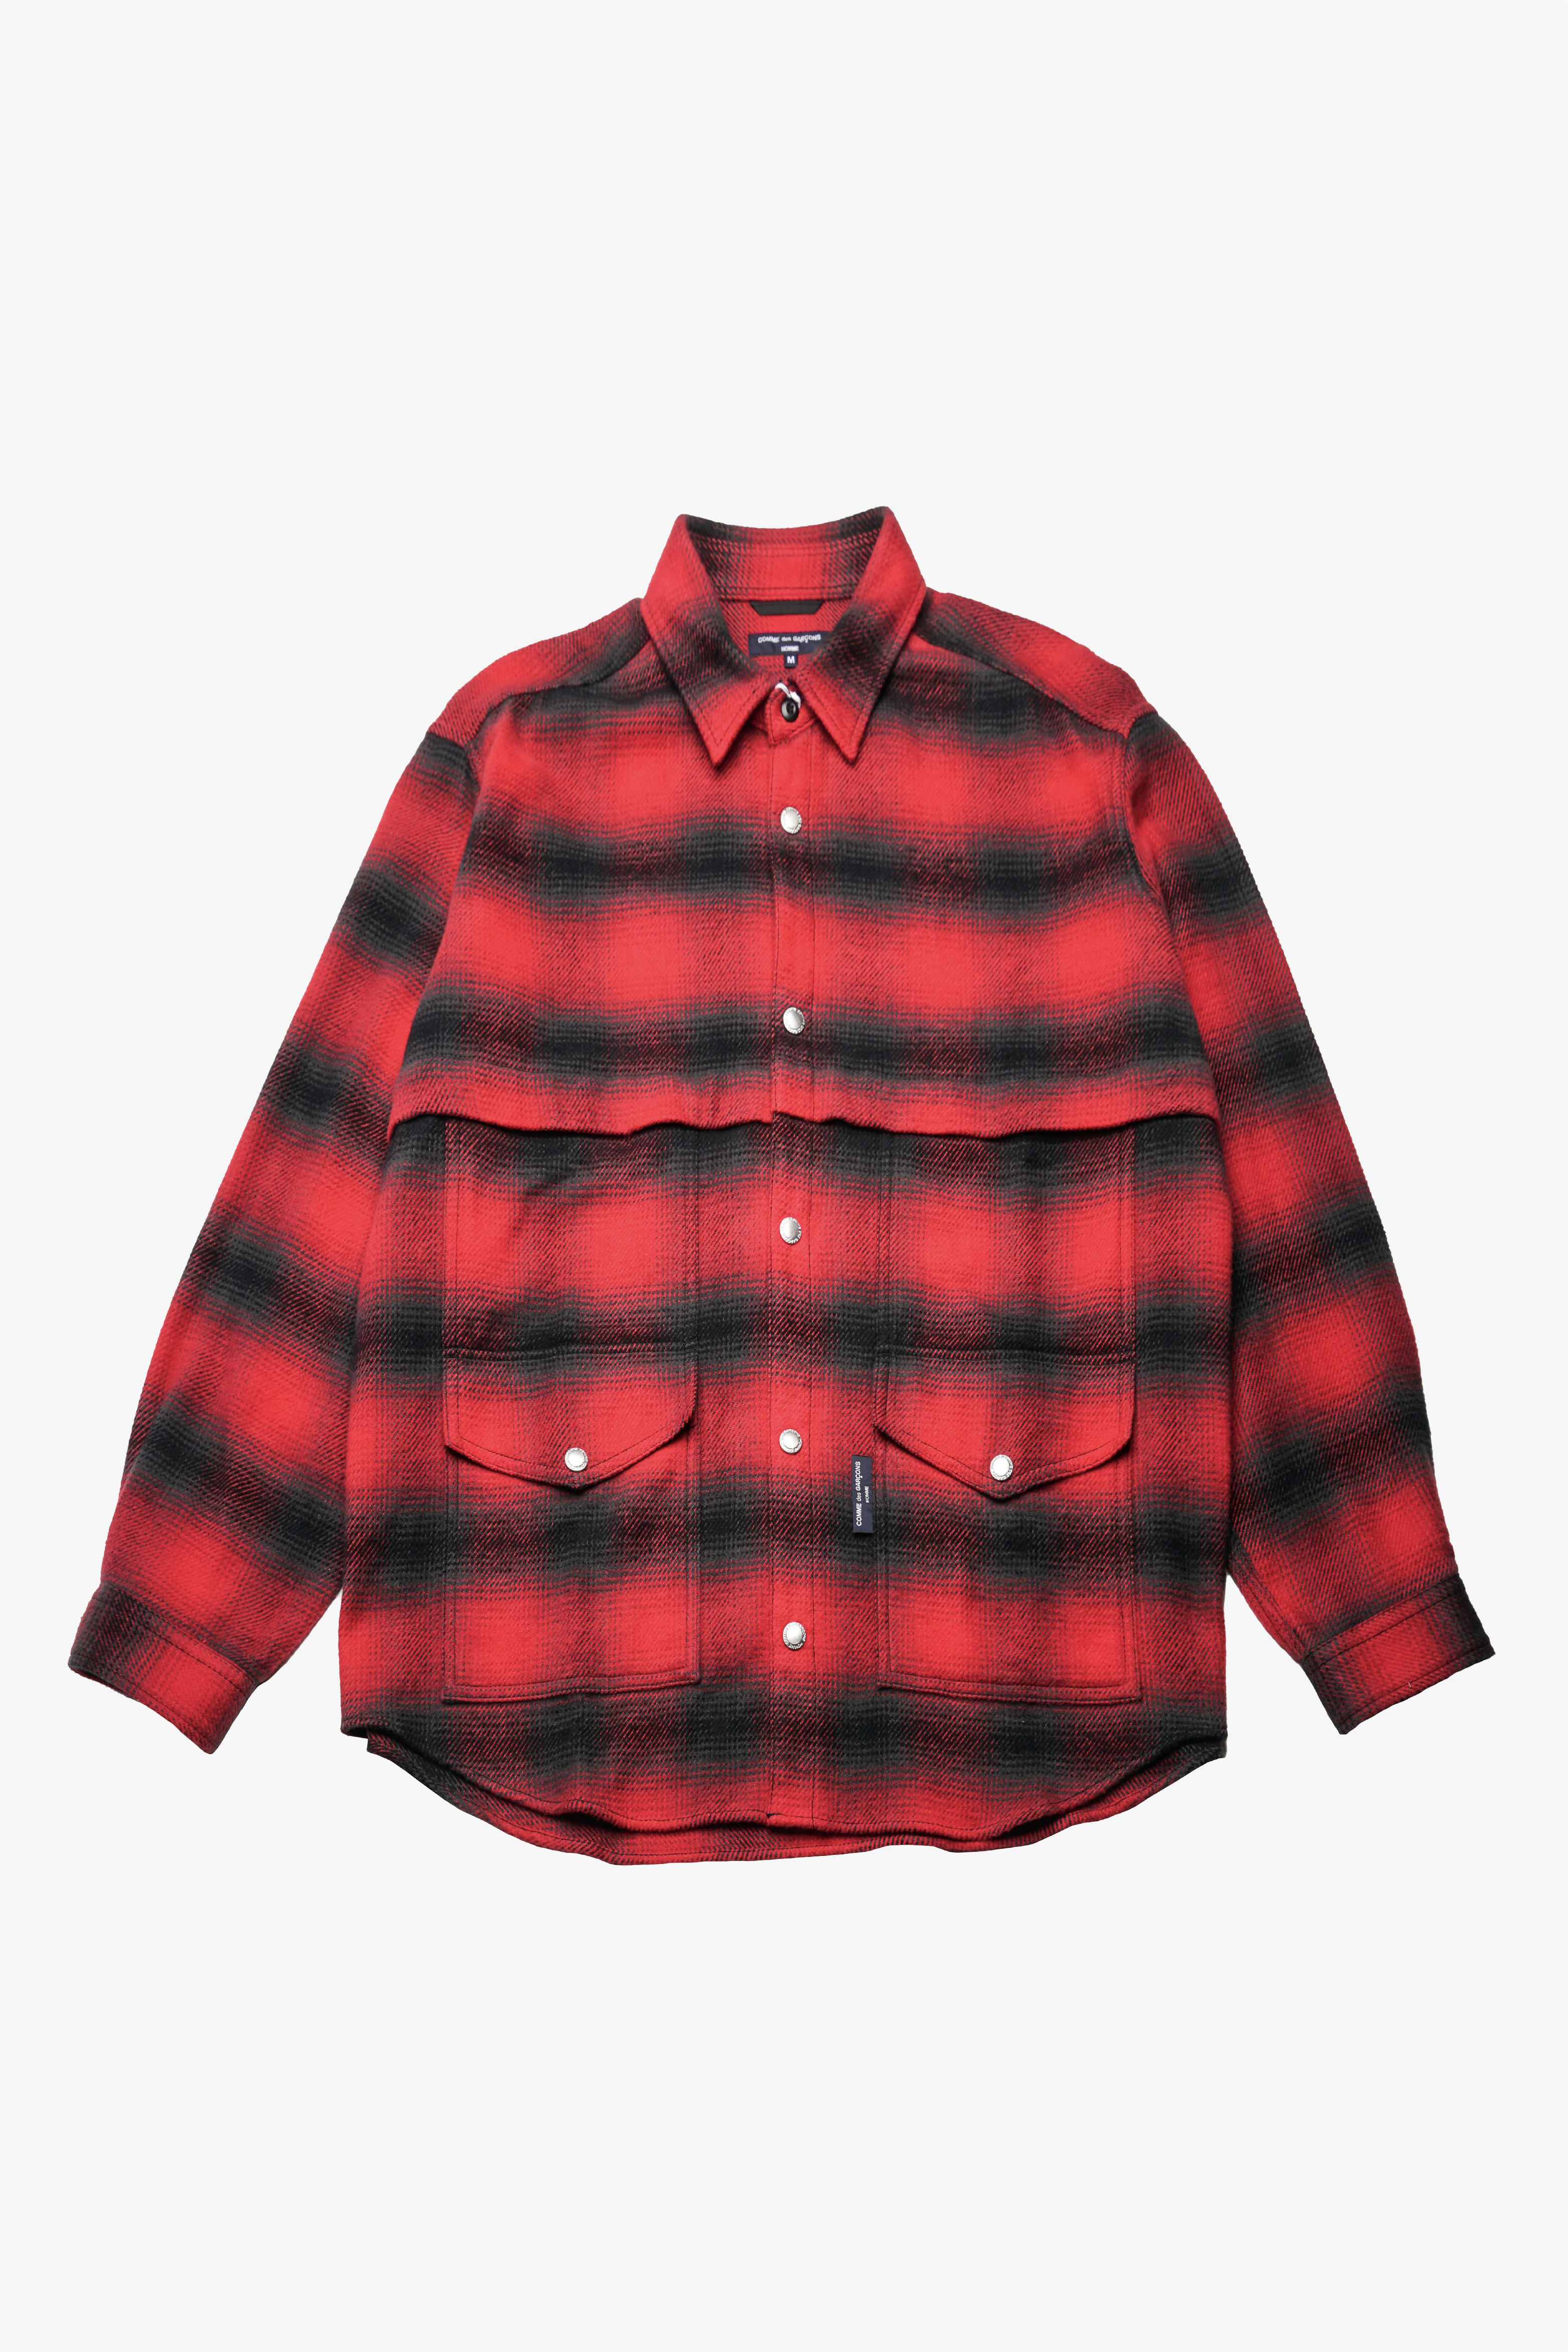 Selectshop FRAME - COMME DES GARÇONS HOMME Shirt Shirts Dubai